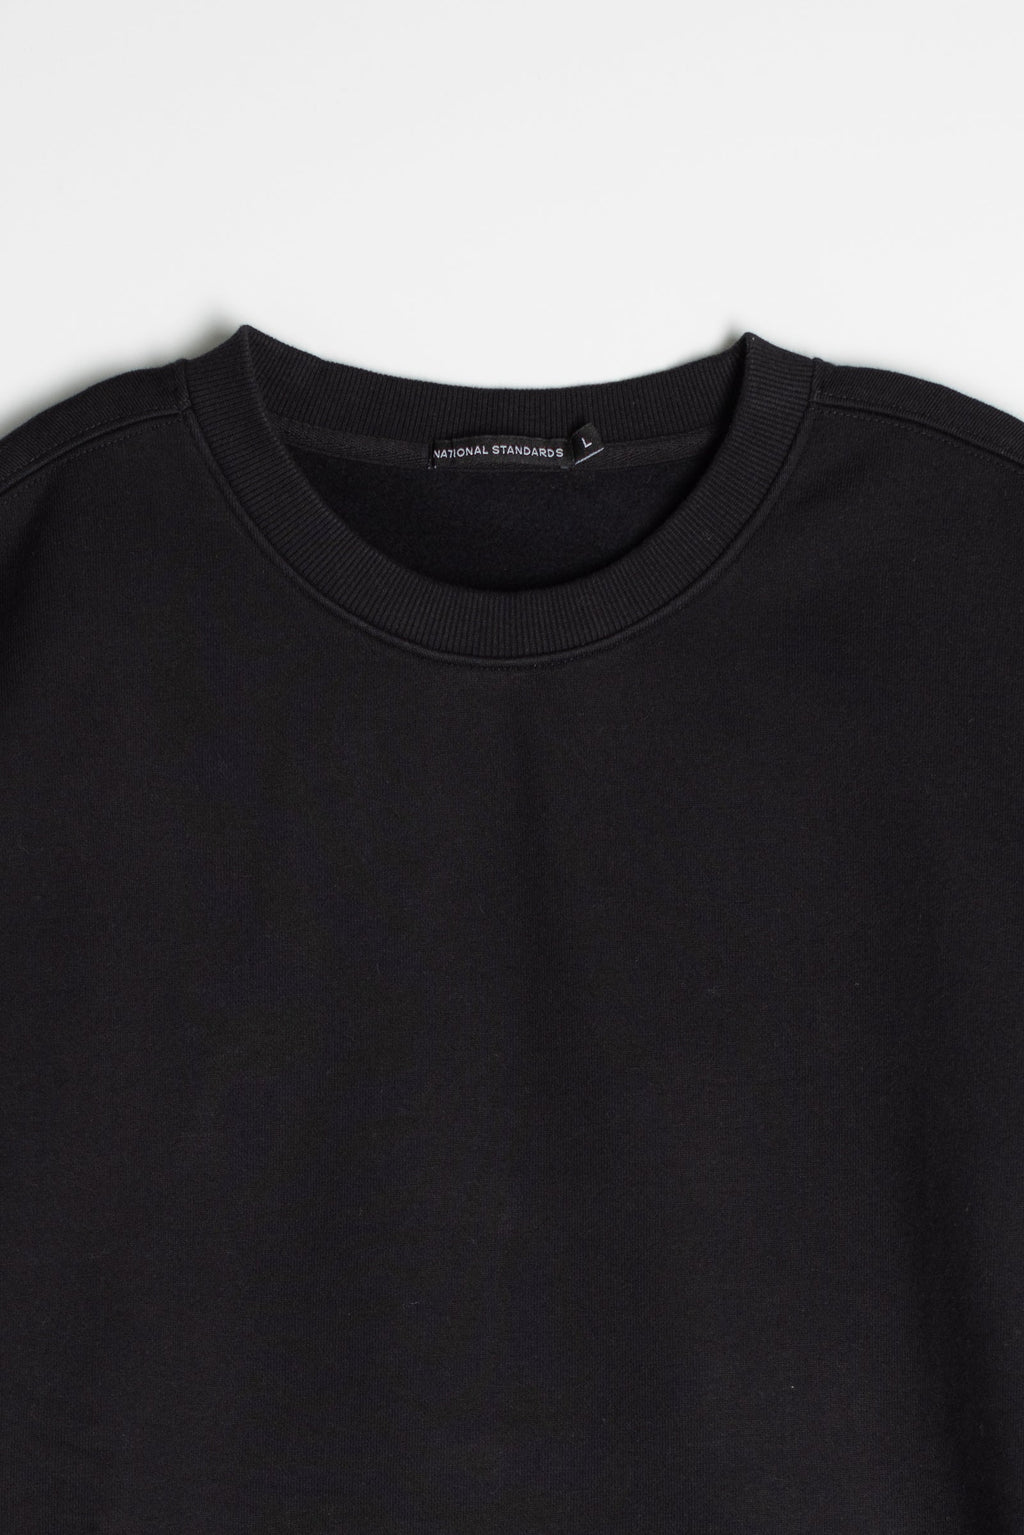 Cotton Fleece Sweatshirt in Black 05